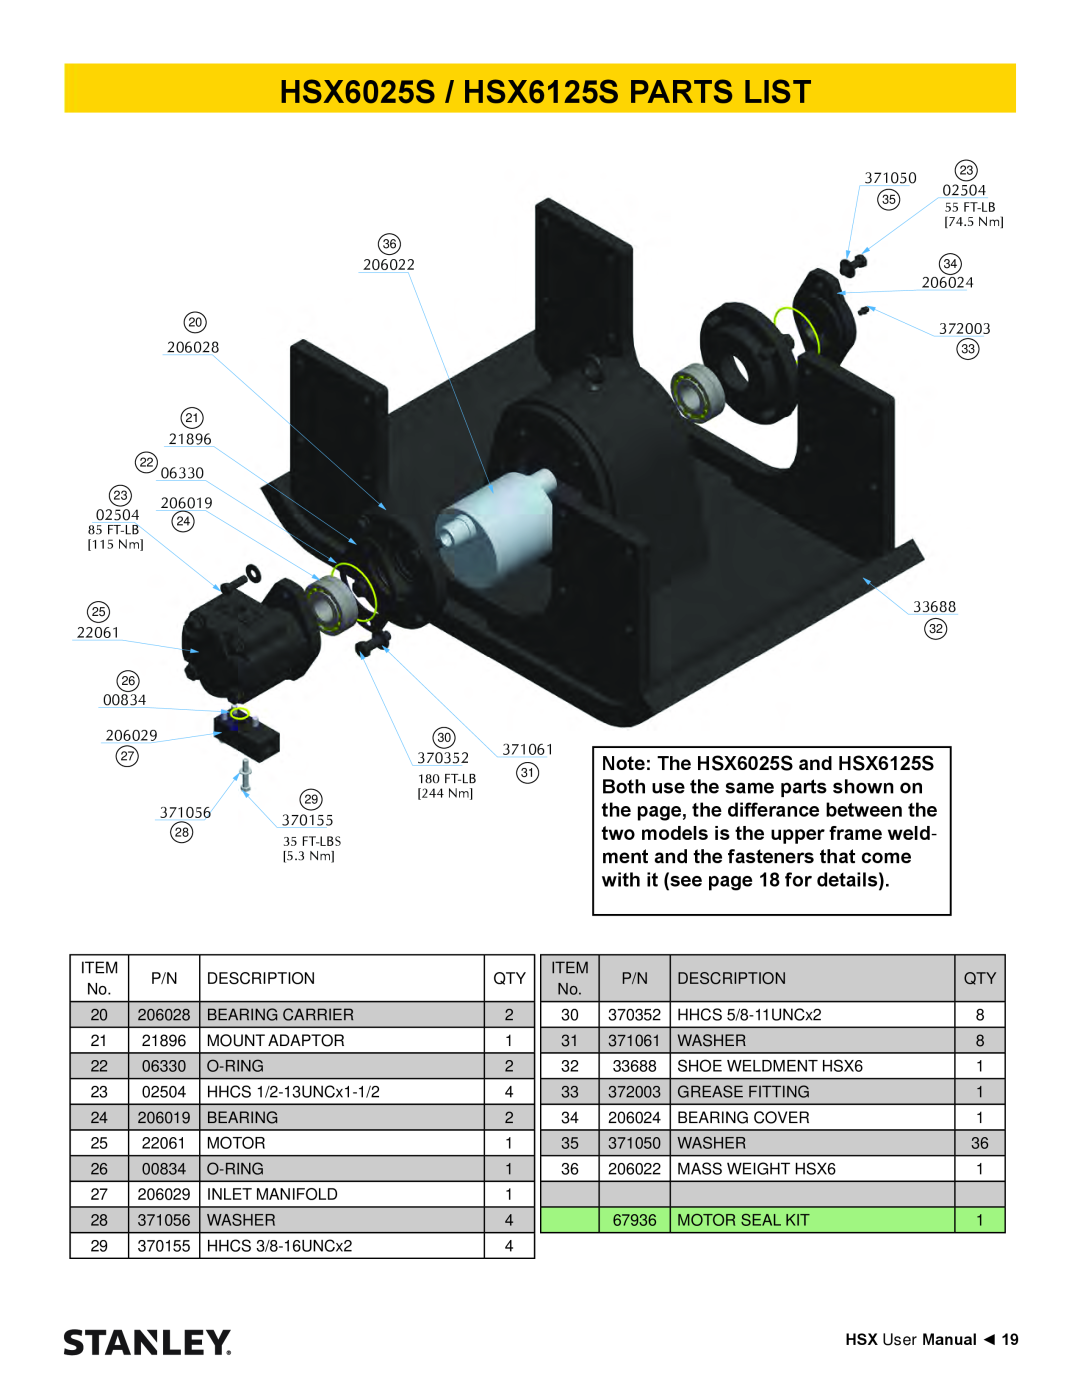 Stanley Black & Decker HSX SERIES HSX6025S / HSX6125S PARTS LIST, HSX User Manual, FT-LB 115 Nm, Ft-Lb, 29 244 Nm 